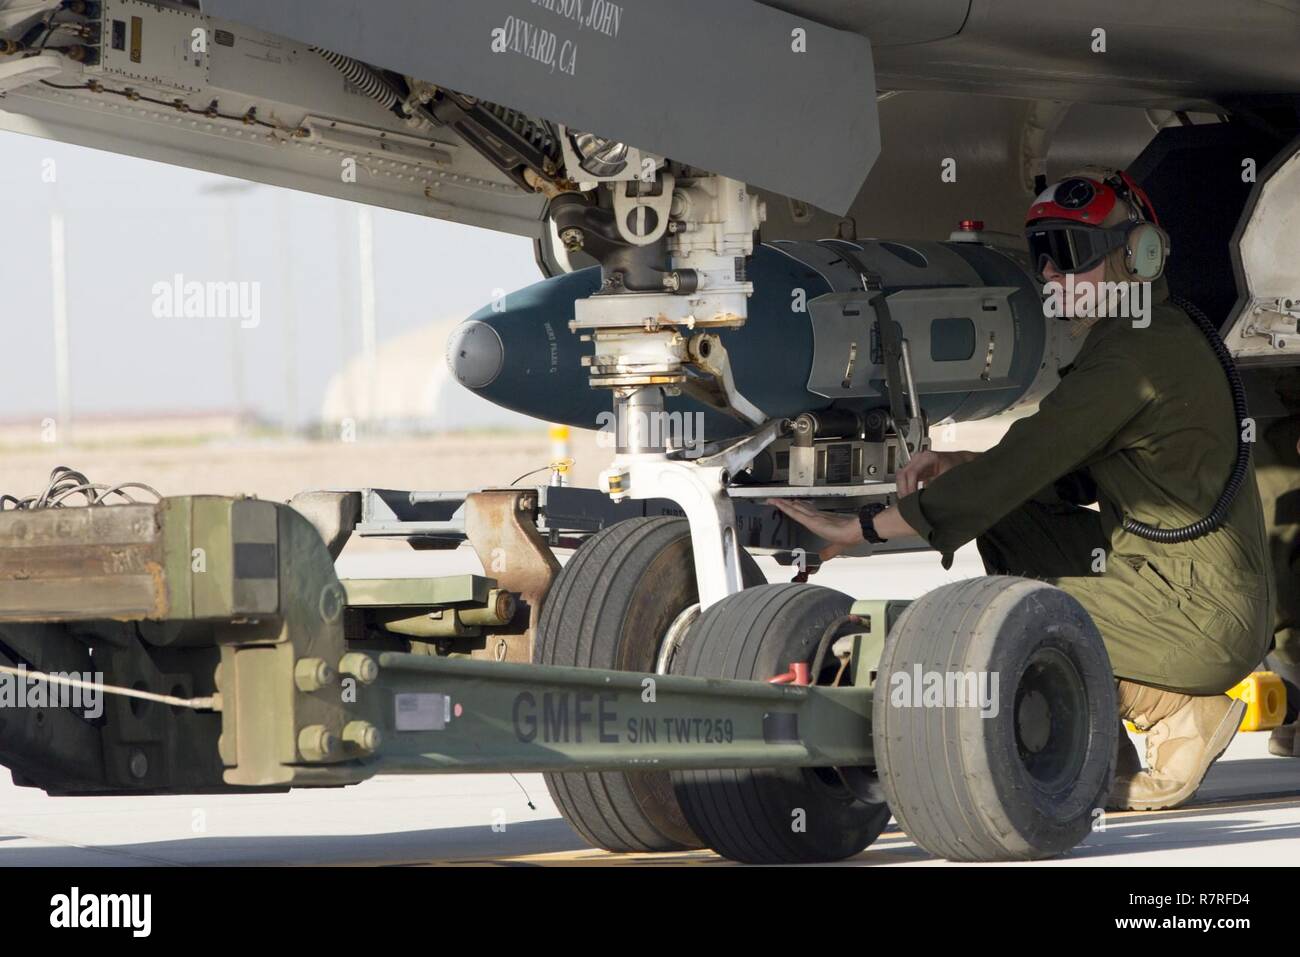 Stati Uniti Marines con VMFA-211 e U.S. Marines con Marine Aviation di armi e tattiche di uno squadrone (MAWTS-1) condurre un carico caldo sulla F-35B Lightning II durante la selezione di armi e tattiche corso istruttori (WTI) 2-17 al Marine Corps Air Station Yuma, Ariz., 30 marzo 2017. Il caricamento di munizioni è stata incentrata sul caricamento del velivolo mentre il pilota è a bordo e il motore è in esecuzione che fornisce la Marine Corps con una capacità di proiettare aria Marine Power in avanti sul campo di battaglia mentre aerei diminuisce il tempo di risposta e di aumentare sortie generazione. Foto Stock